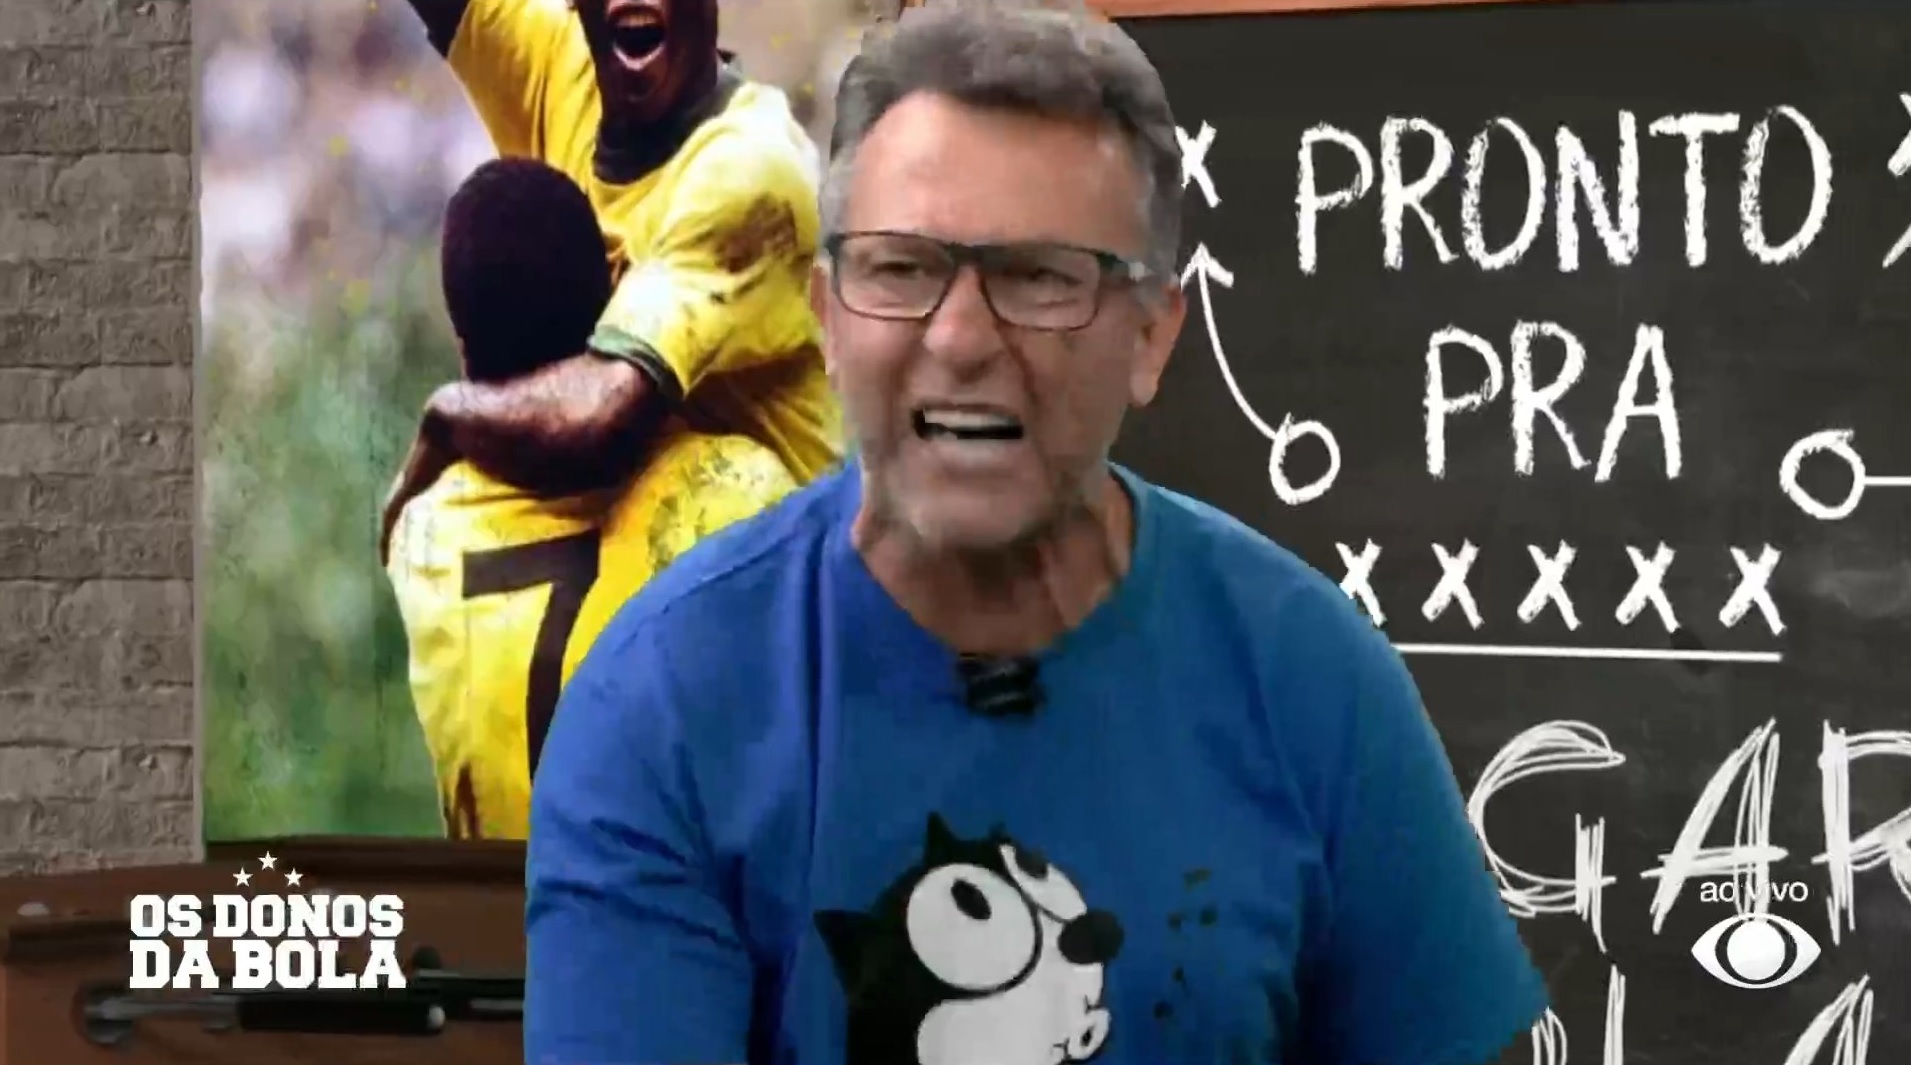 Ao vivo na Band, Craque Neto surta com derrota do Brasil e culpa Tite: “Sem vergonha, burro, idiota”